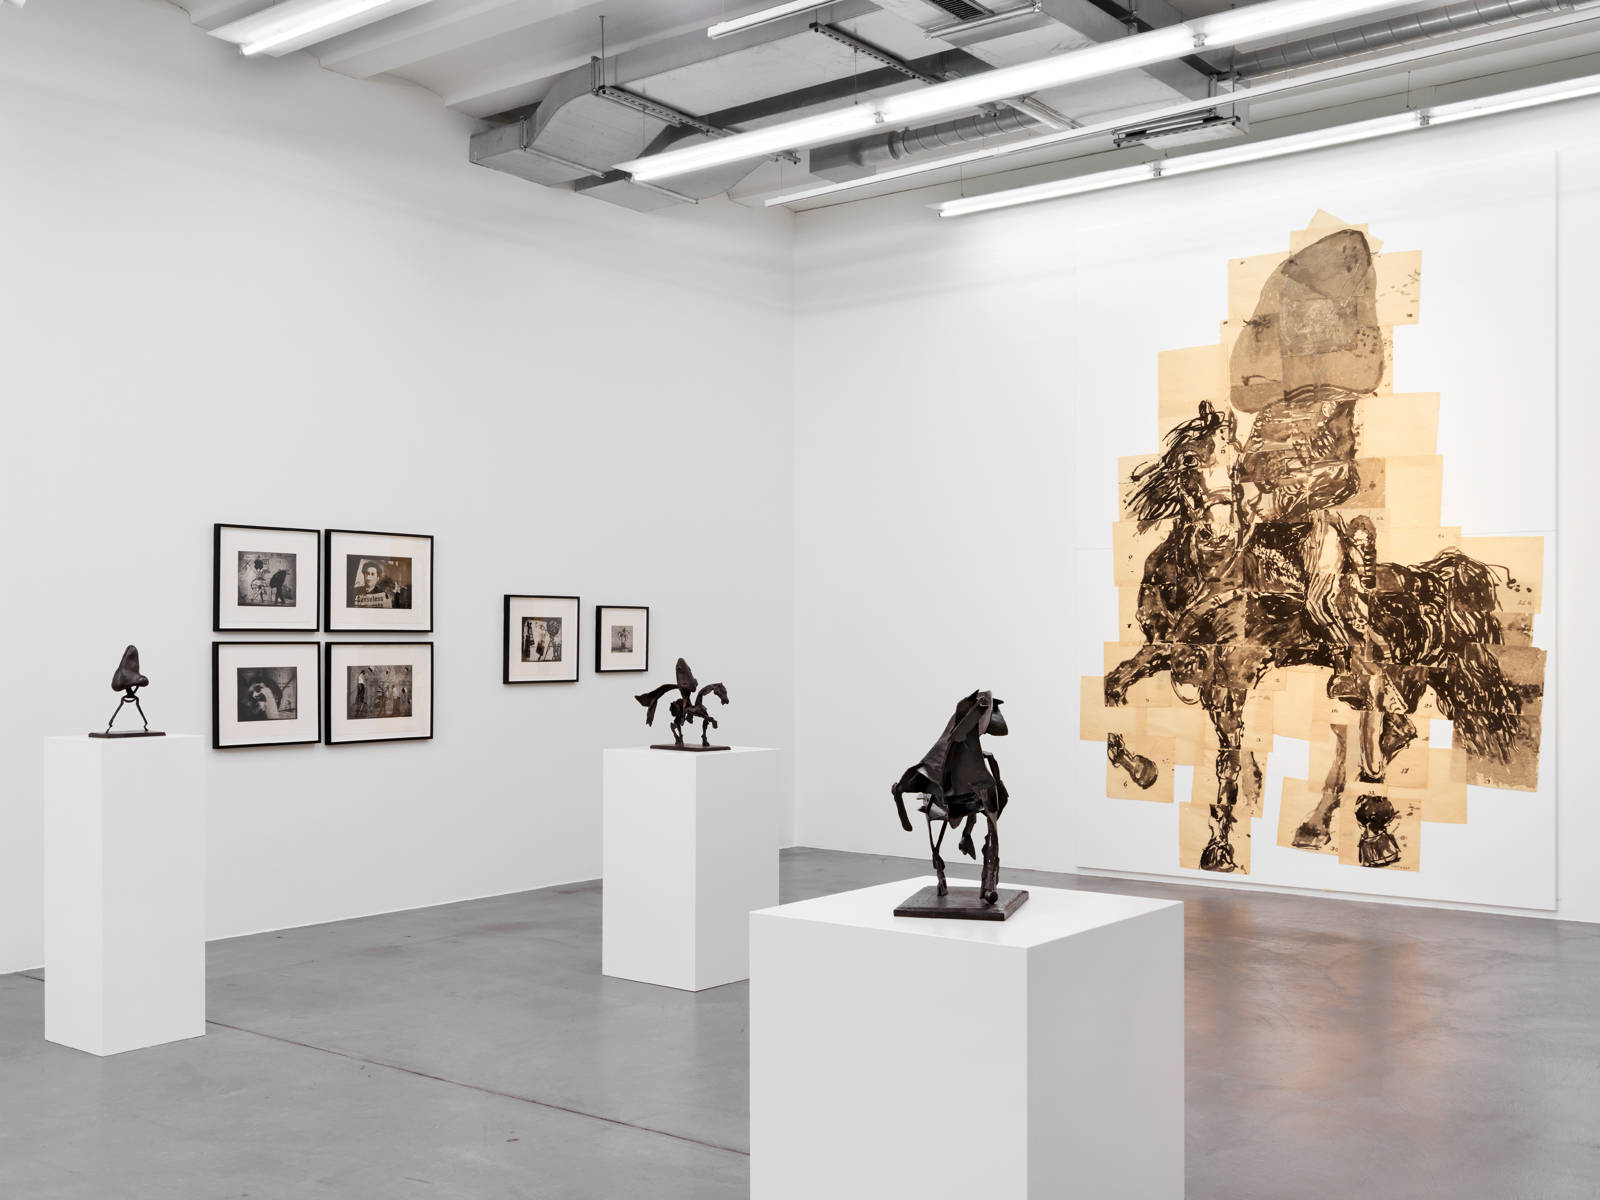 William Kentridge / "The Nose", exhibition view, Haus Konstruktiv, Zürich / 2015